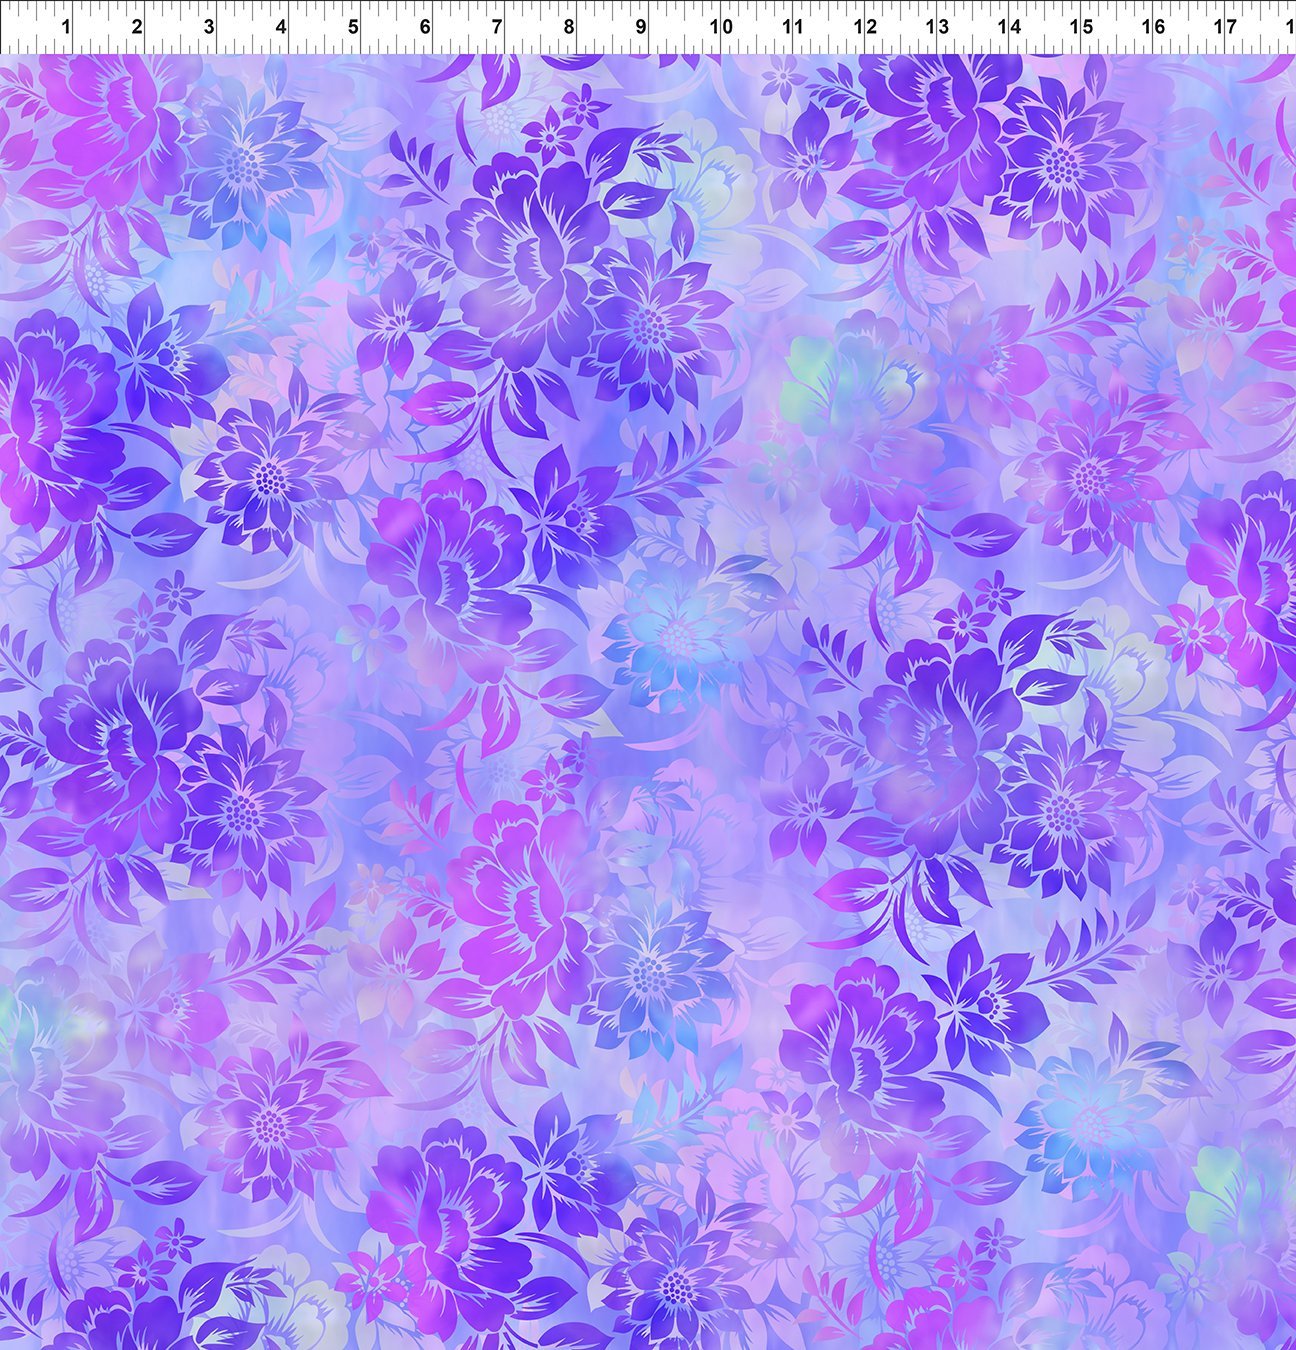 Garden of Dreams II by Jason Yenter - Floral Dream, Purple - 2JYR3